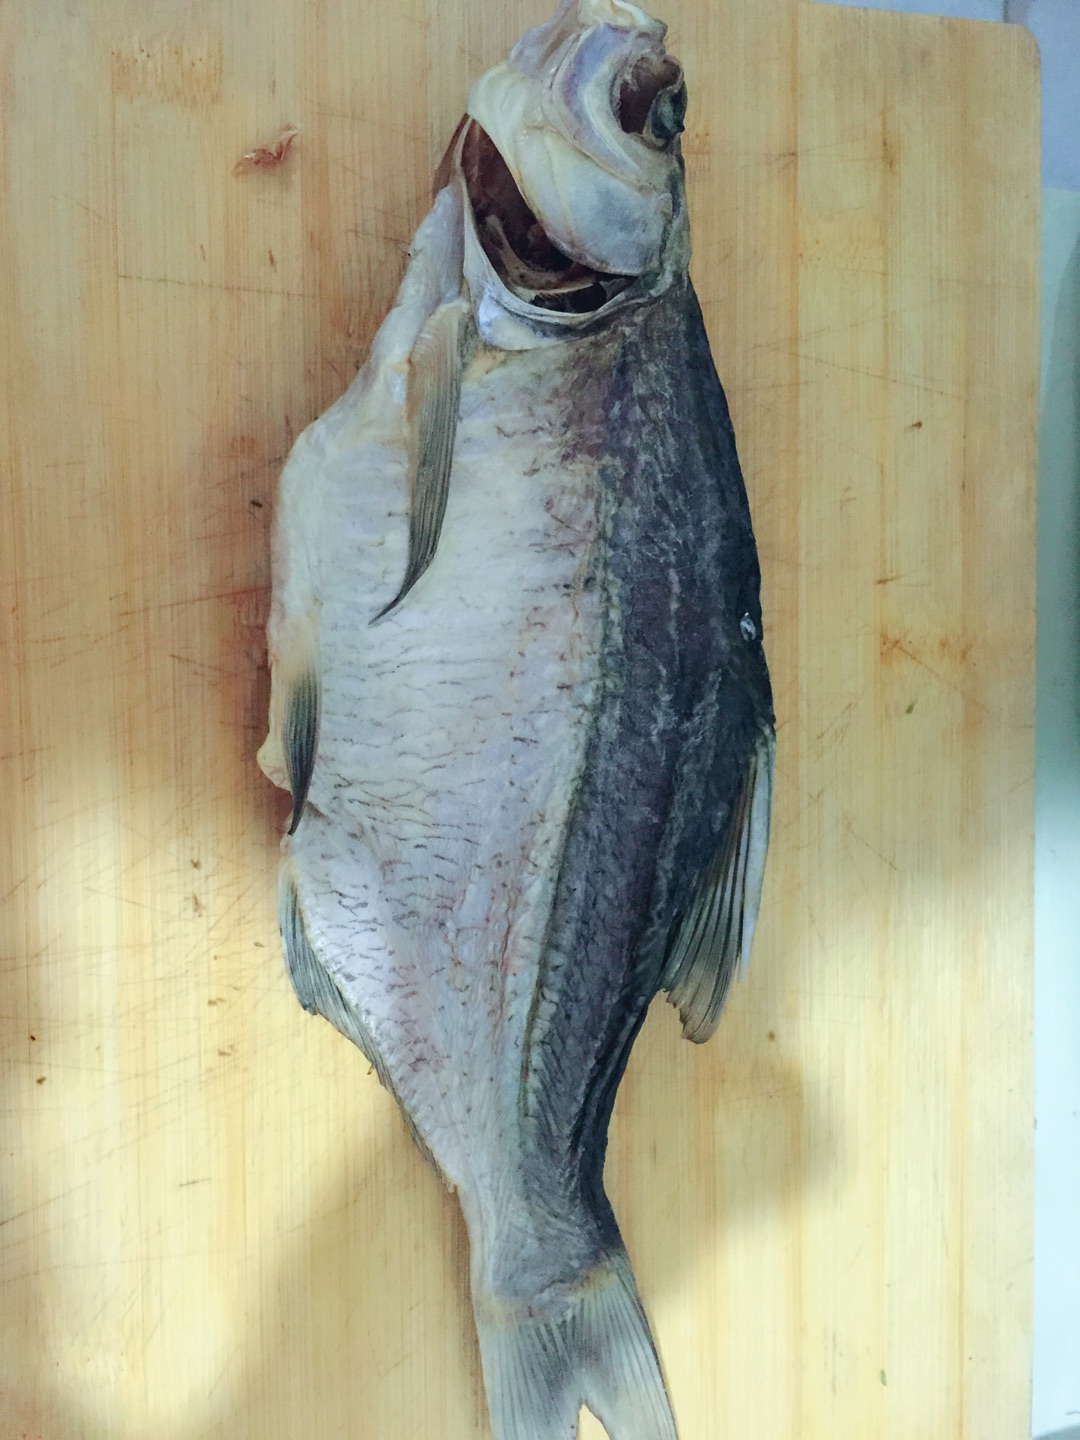 用咸鱼做出好吃的剁椒鱼,用咸鱼做出好吃的剁椒鱼的家常做法 - 美食杰用咸鱼做出好吃的剁椒鱼做法大全